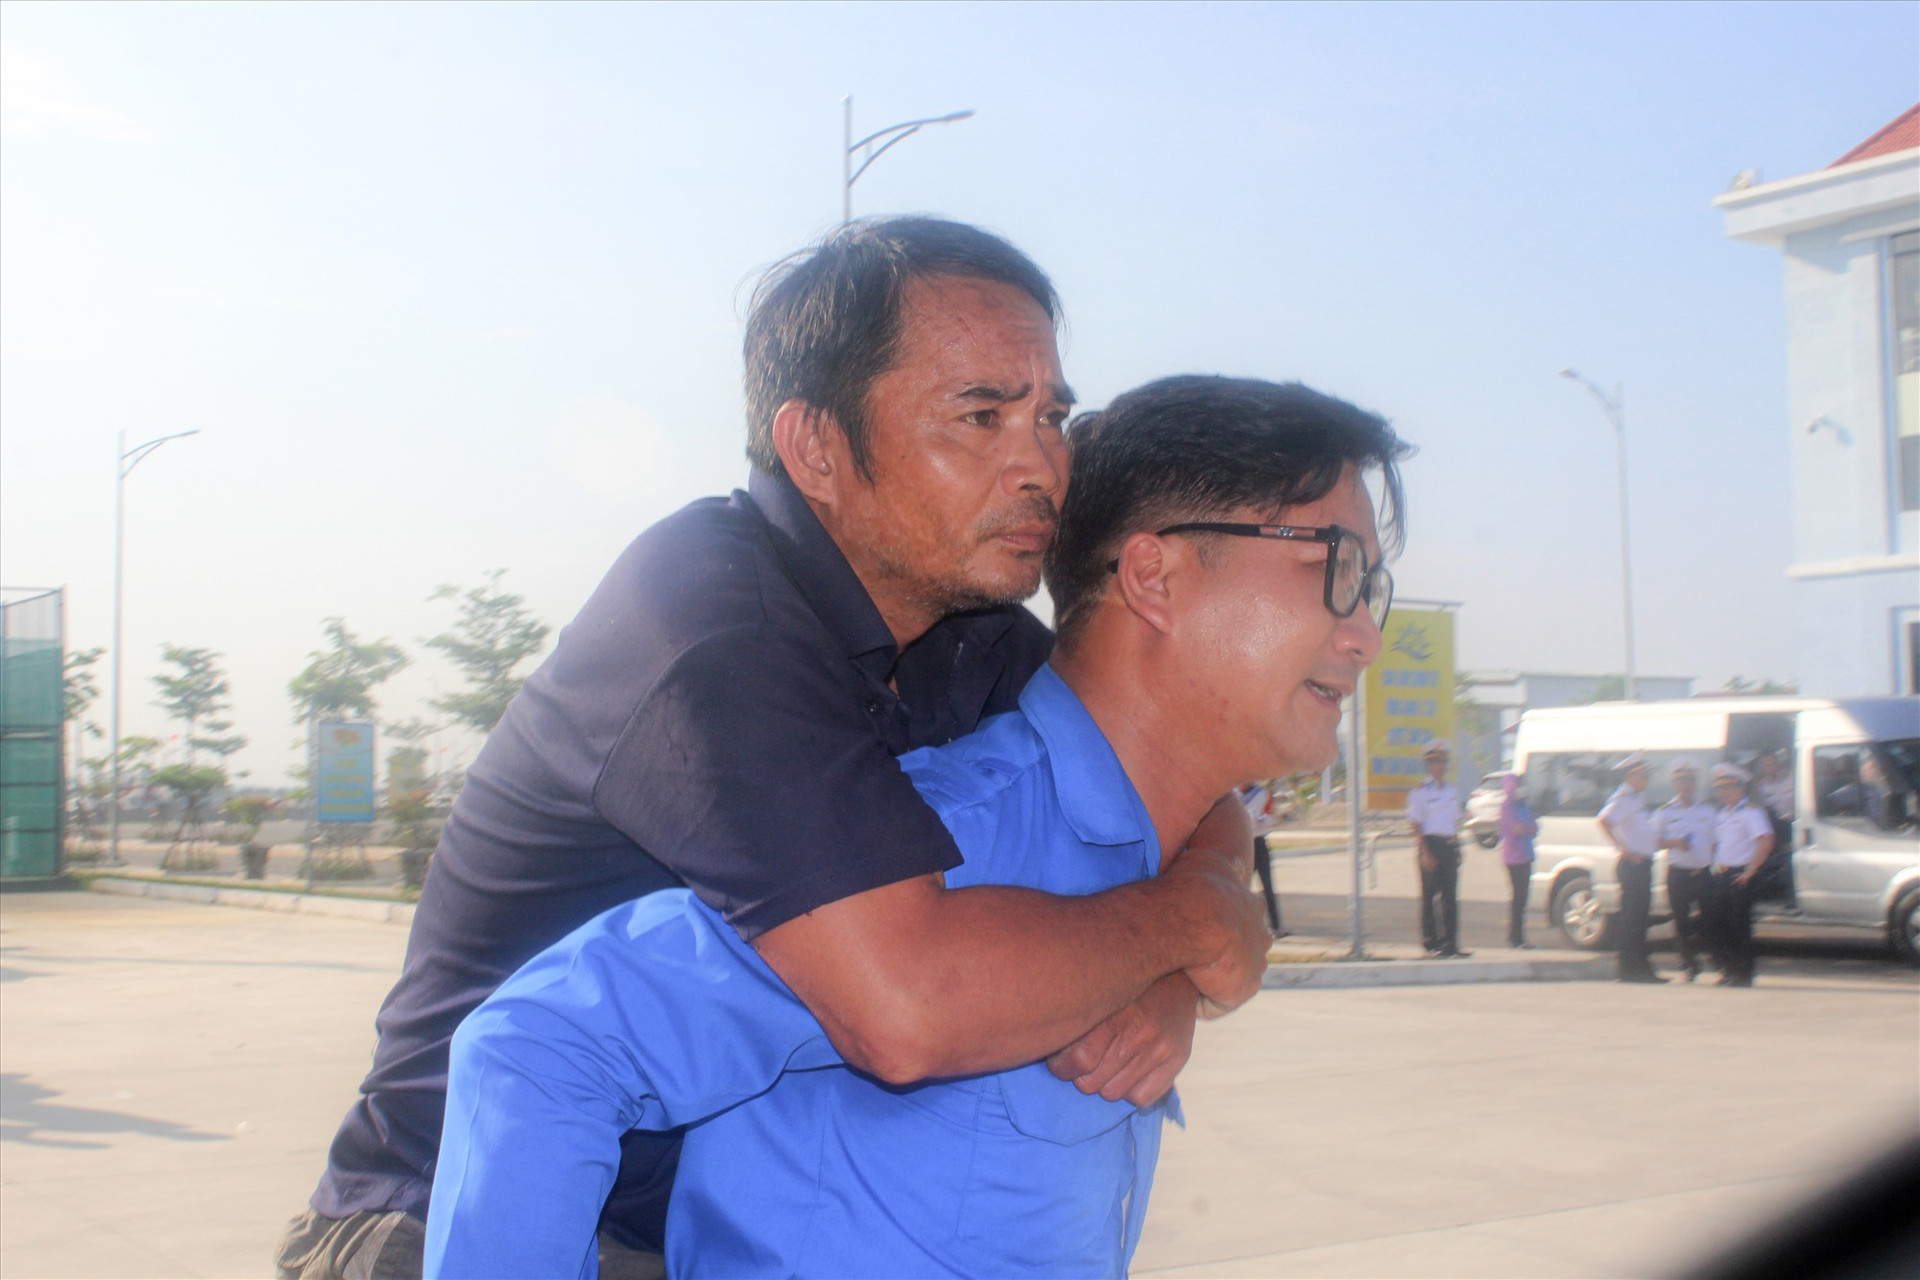 Ngư dân Nguyễn Hữu Đối được cõng lên xe. Ông Đối bị thương ở chân sau vụ tai nạn chìm tàu. Ảnh: C.Q